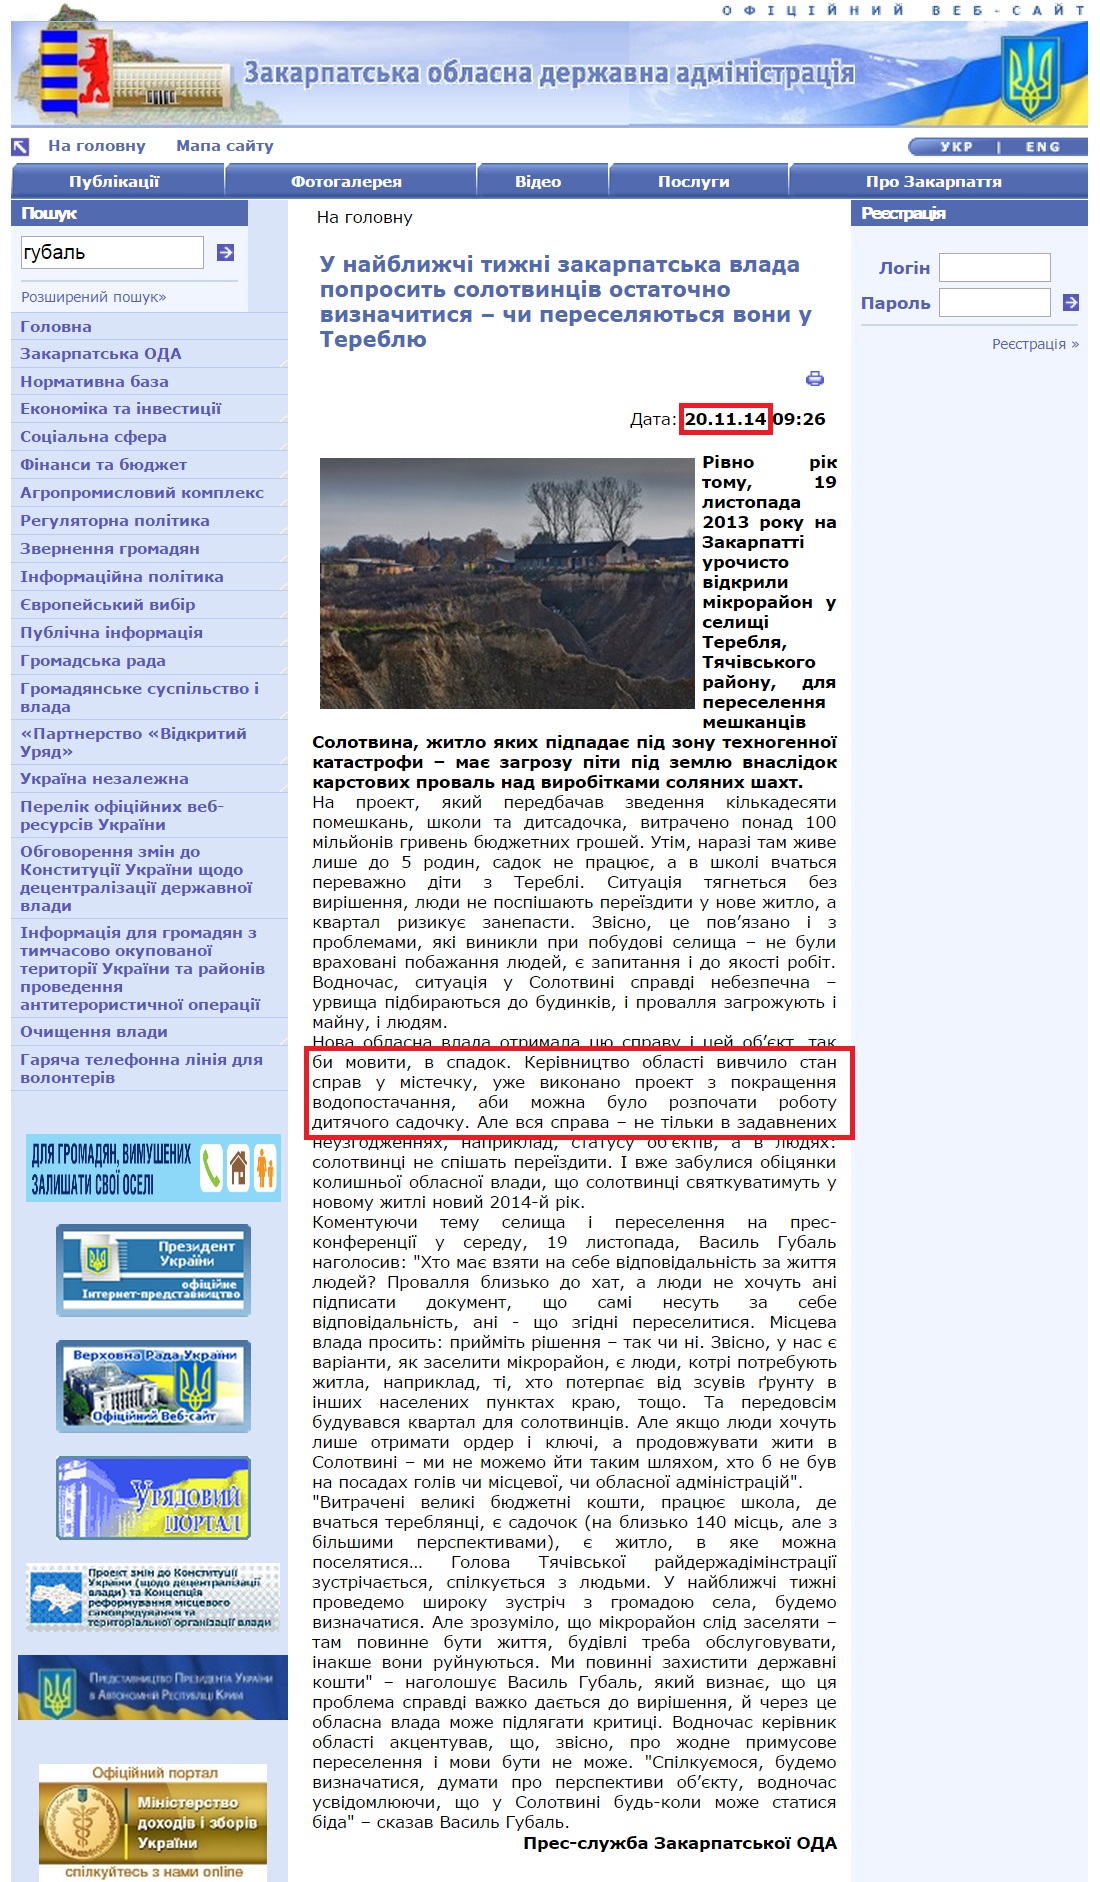 http://www.carpathia.gov.ua/ua/publication/content/10353.htm?lightWords=%D0%B3%D1%83%D0%B1%D0%B0%D0%BB%D1%8C